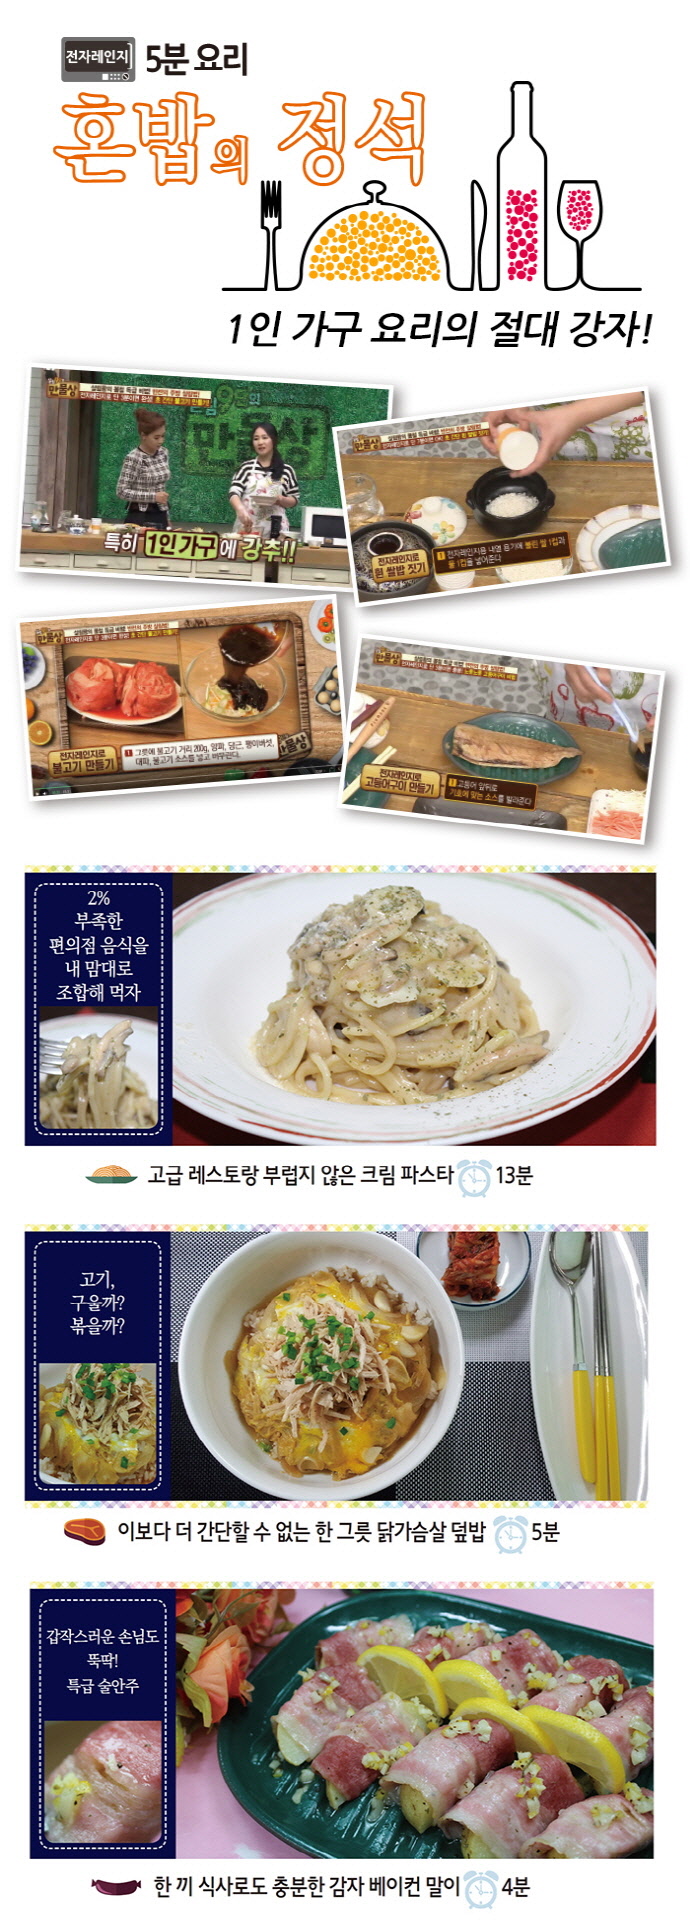 혼밥의 정석(전자레인지 5분 요리)(스프링) 도서 상세이미지